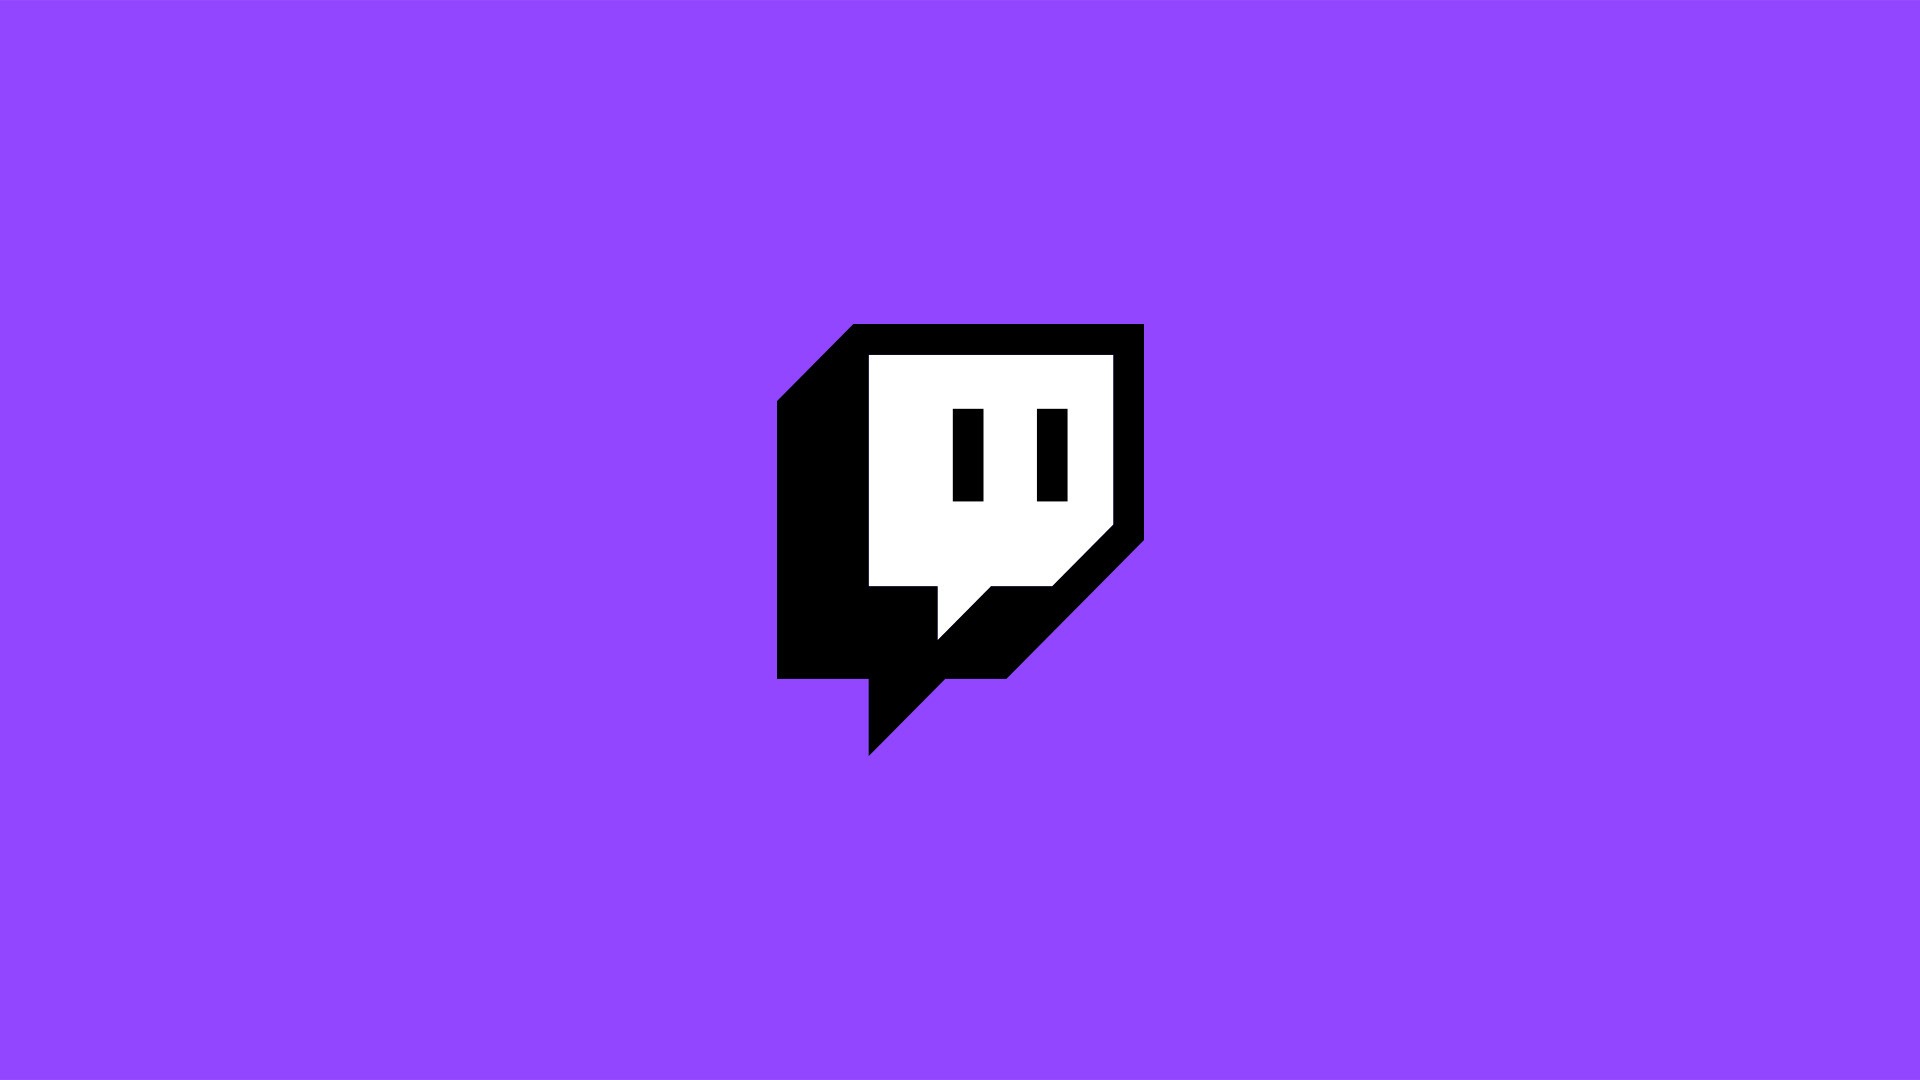 Imagem mostra a logomarca da plataforma de streaming Twitch, que anunciou cortes nas remunerações de criadores de conteúdo premium